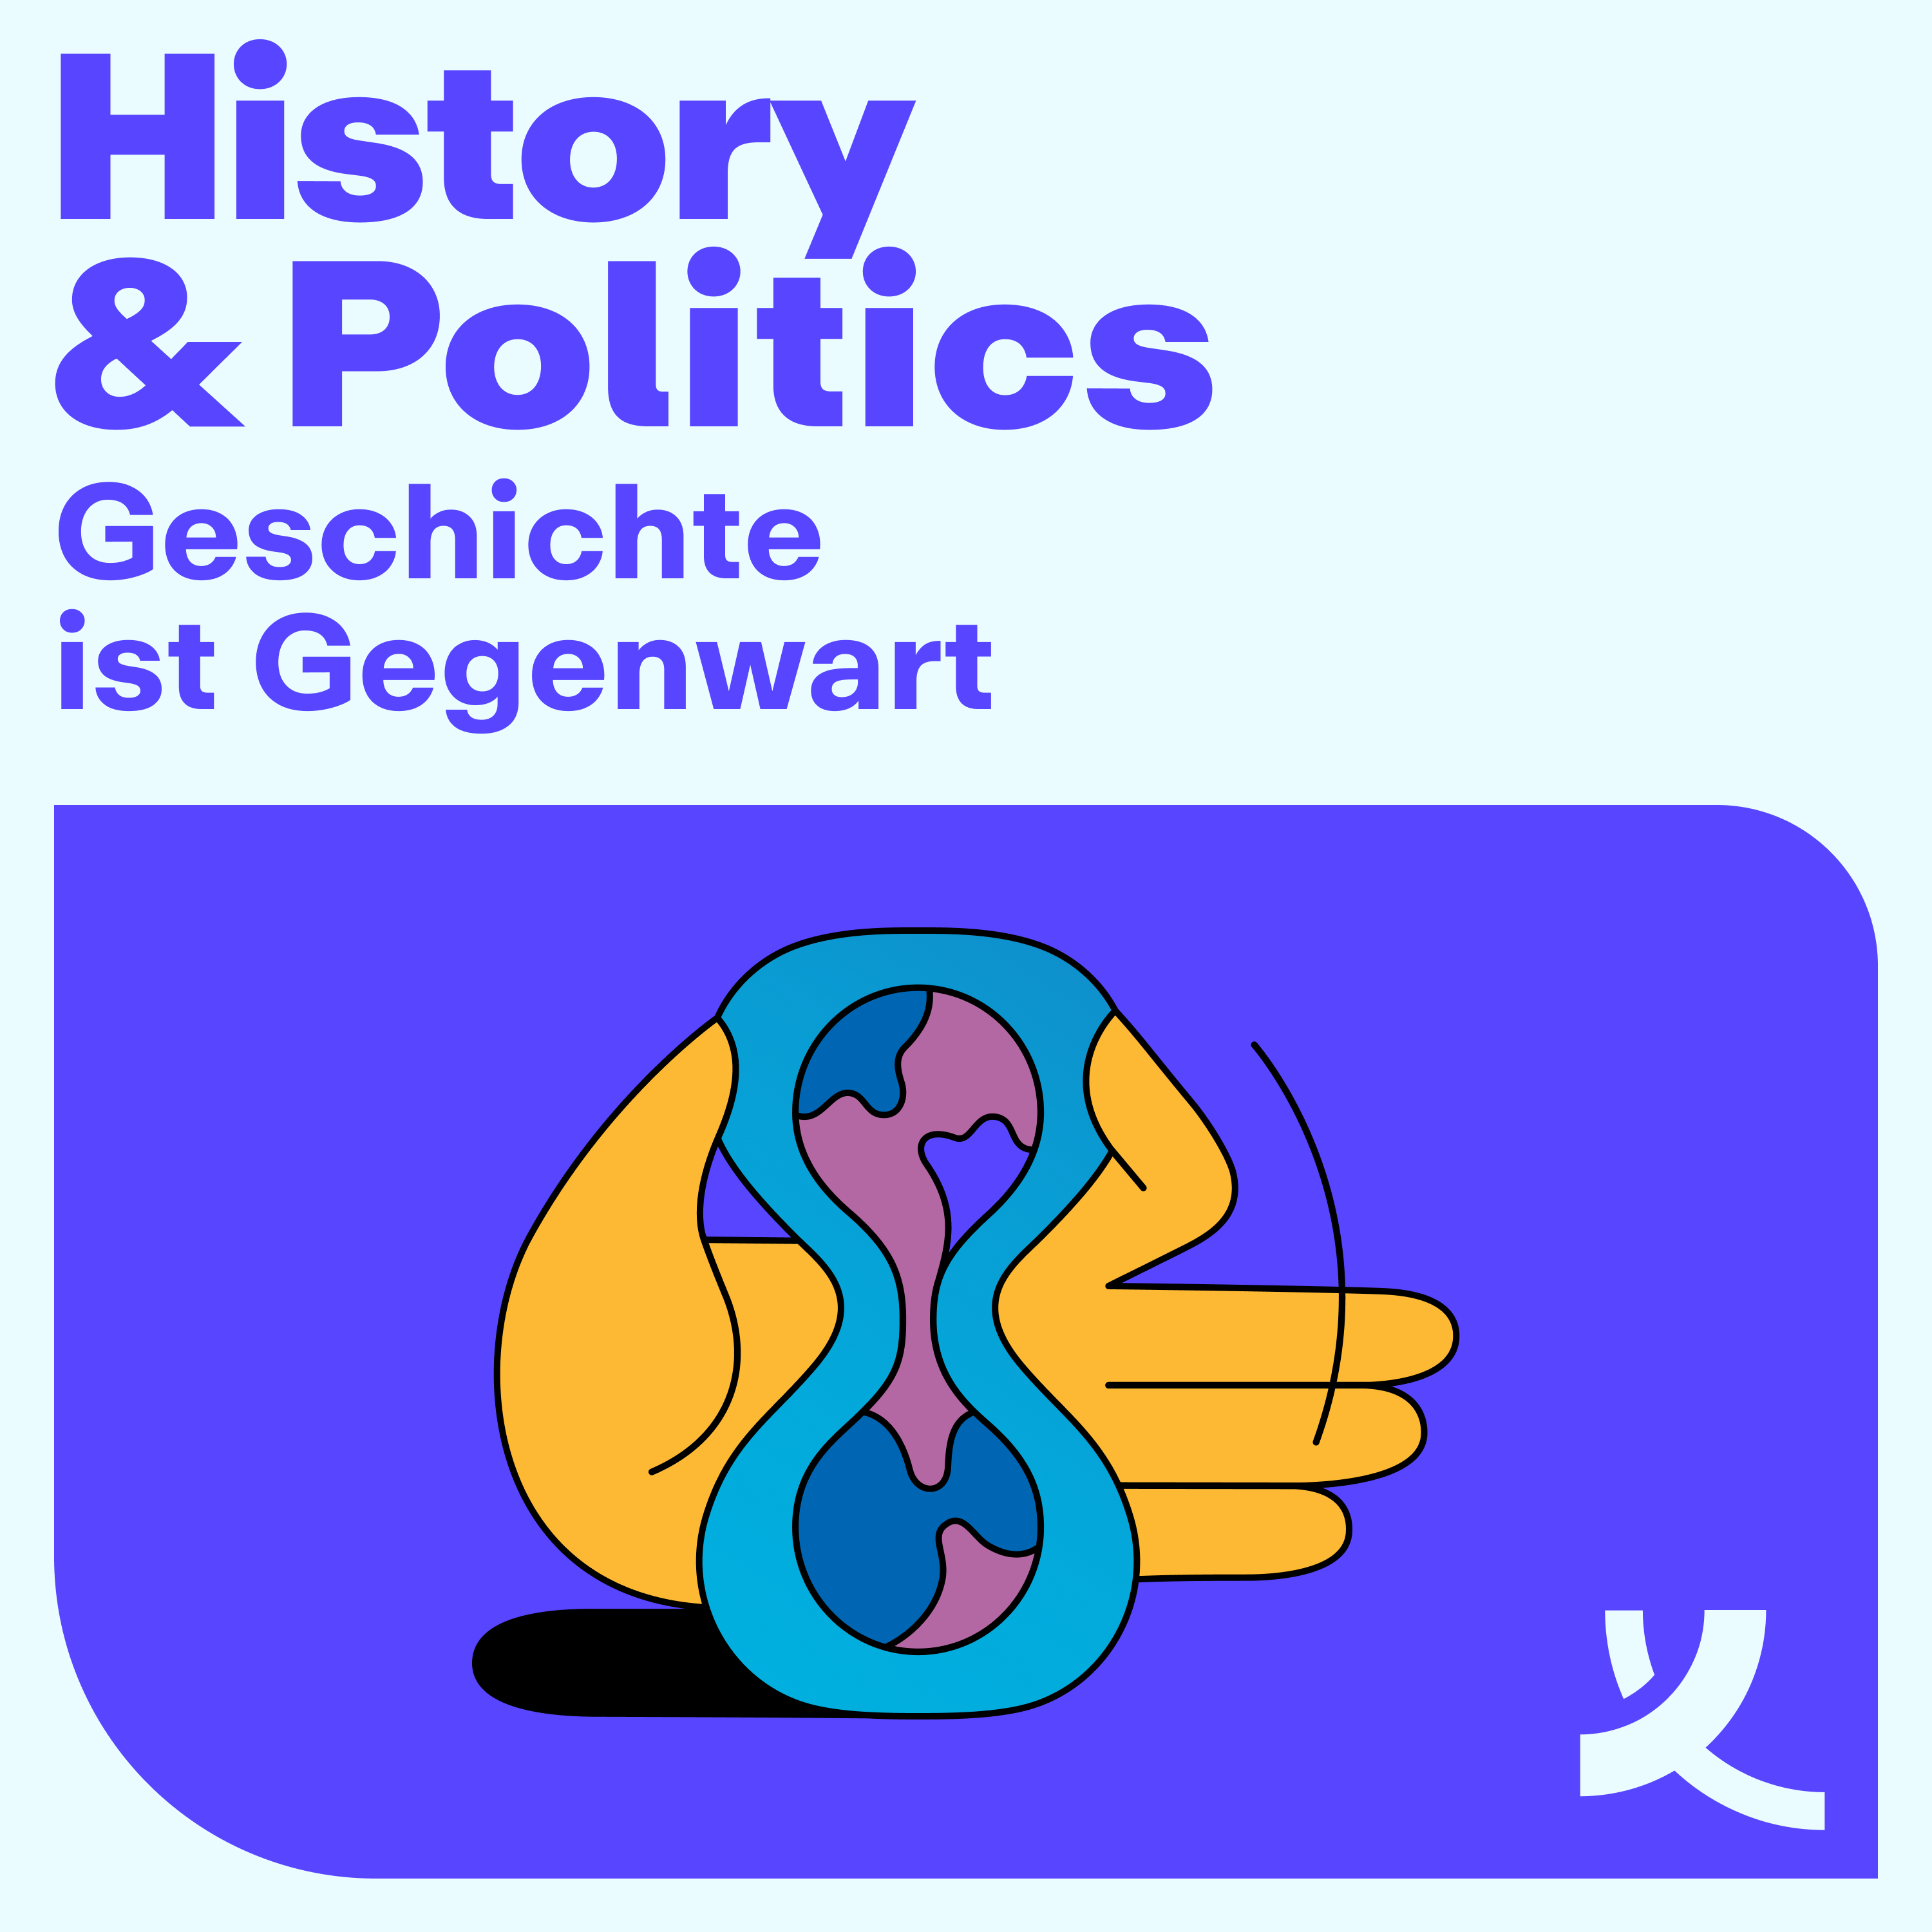 Geschichte ist Gegenwart! Der History & Politics Podcast der Körber-Stiftung